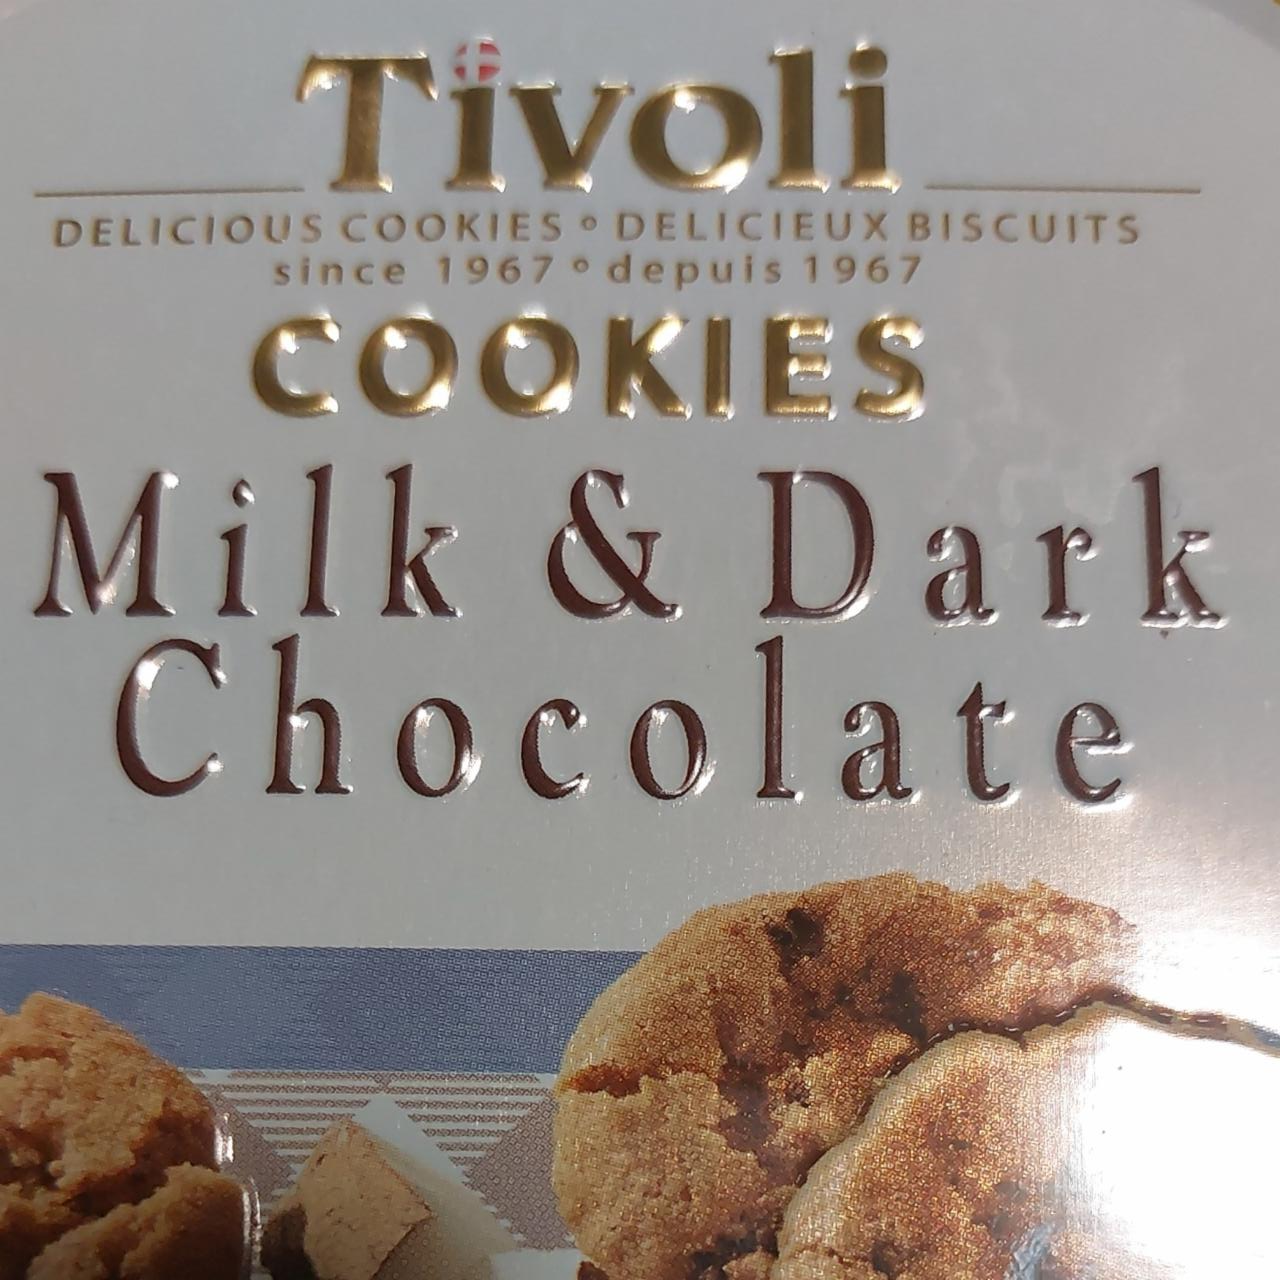 Фото - Печенье Milk&Dark Chocolate Тіvoli Jacobsens